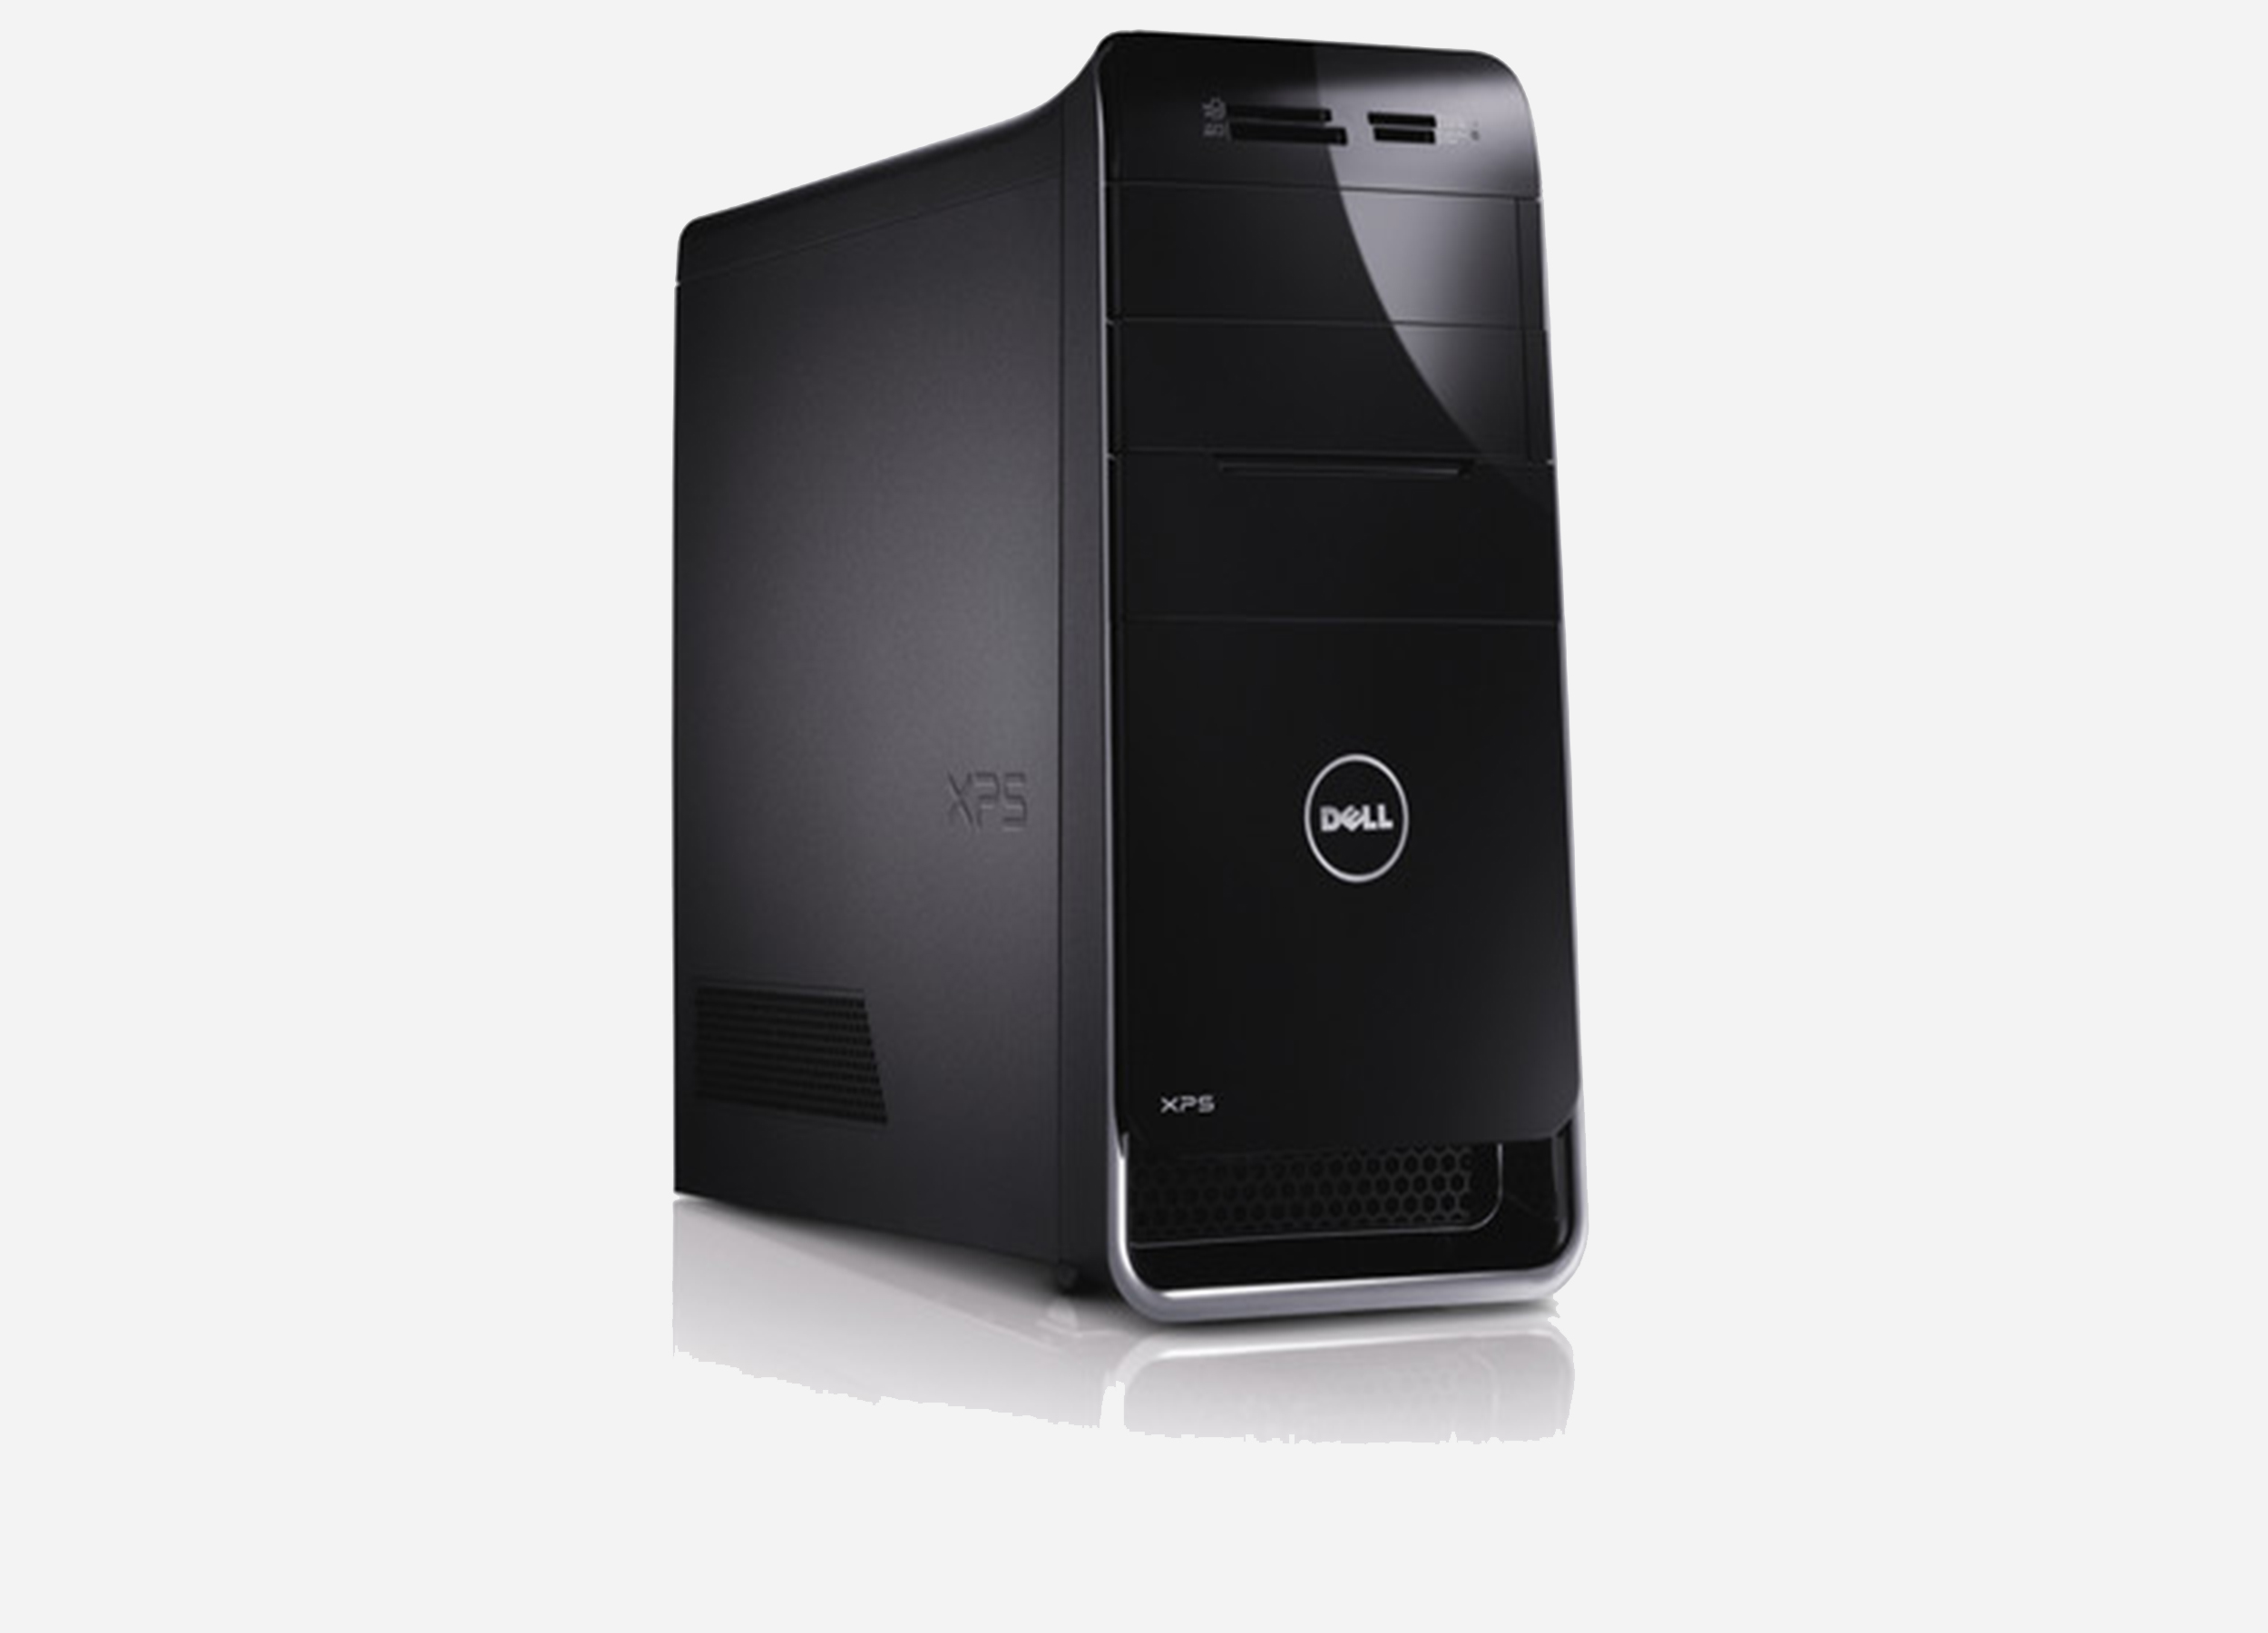 Dell XPS 8300 i7-2600